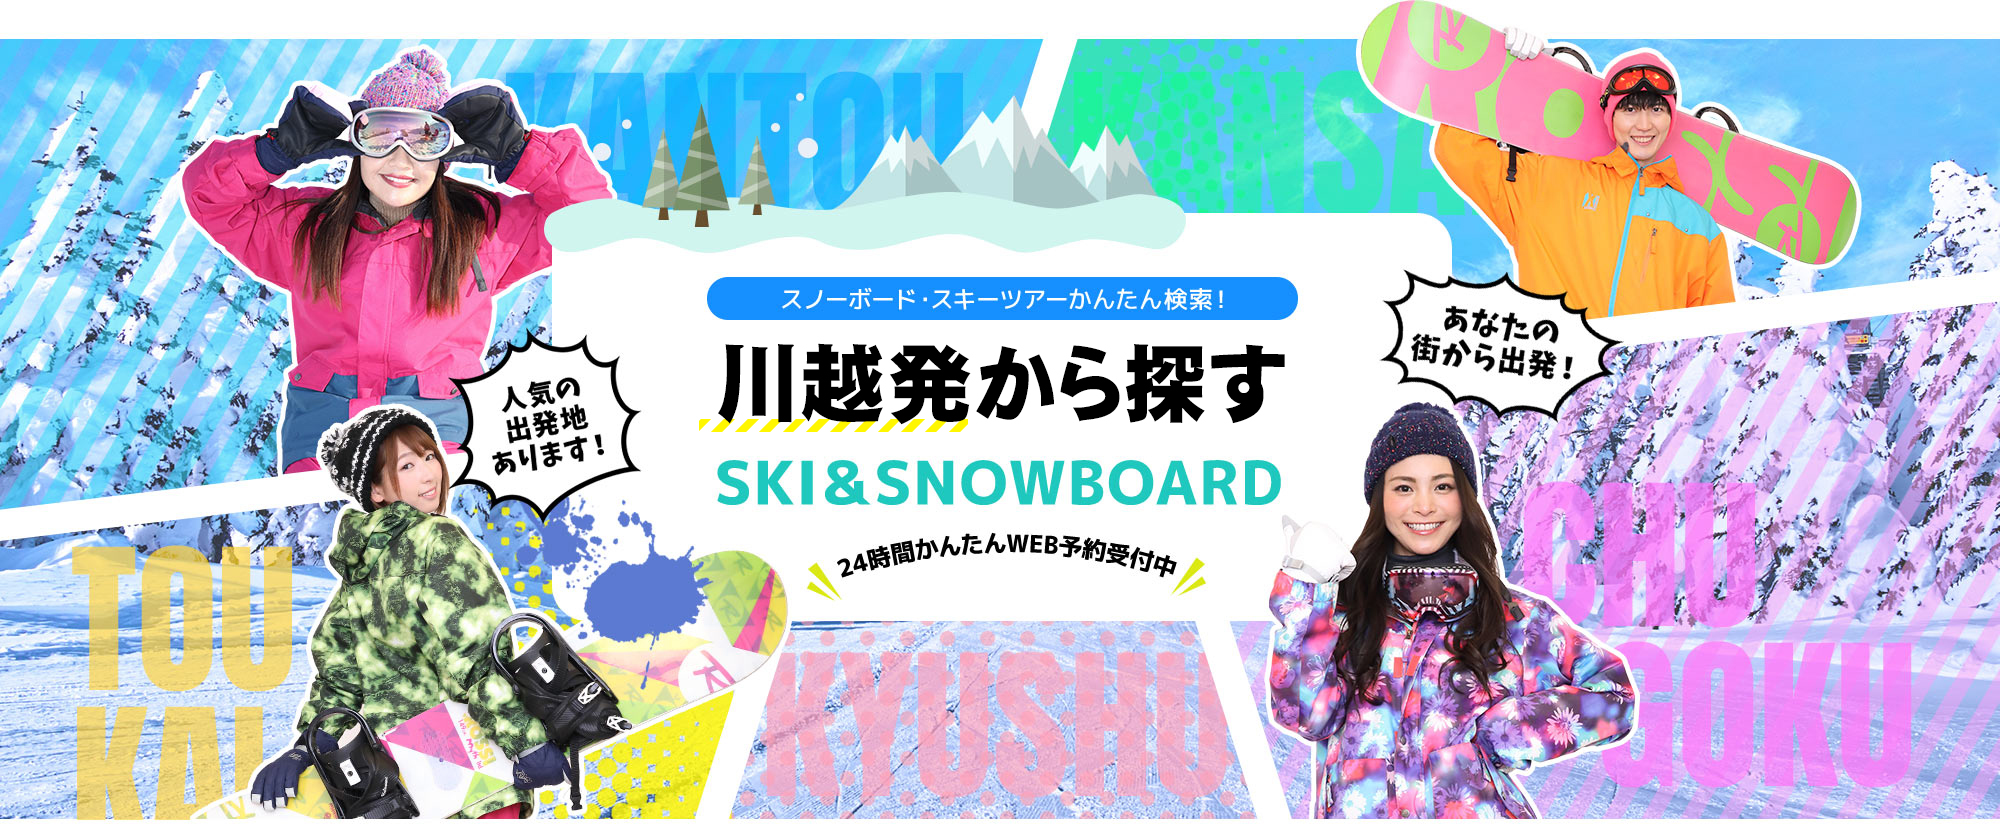 スノーボード・スキーツアーかんたん検索！ 川越発から探す SKI&SNOWBOARD